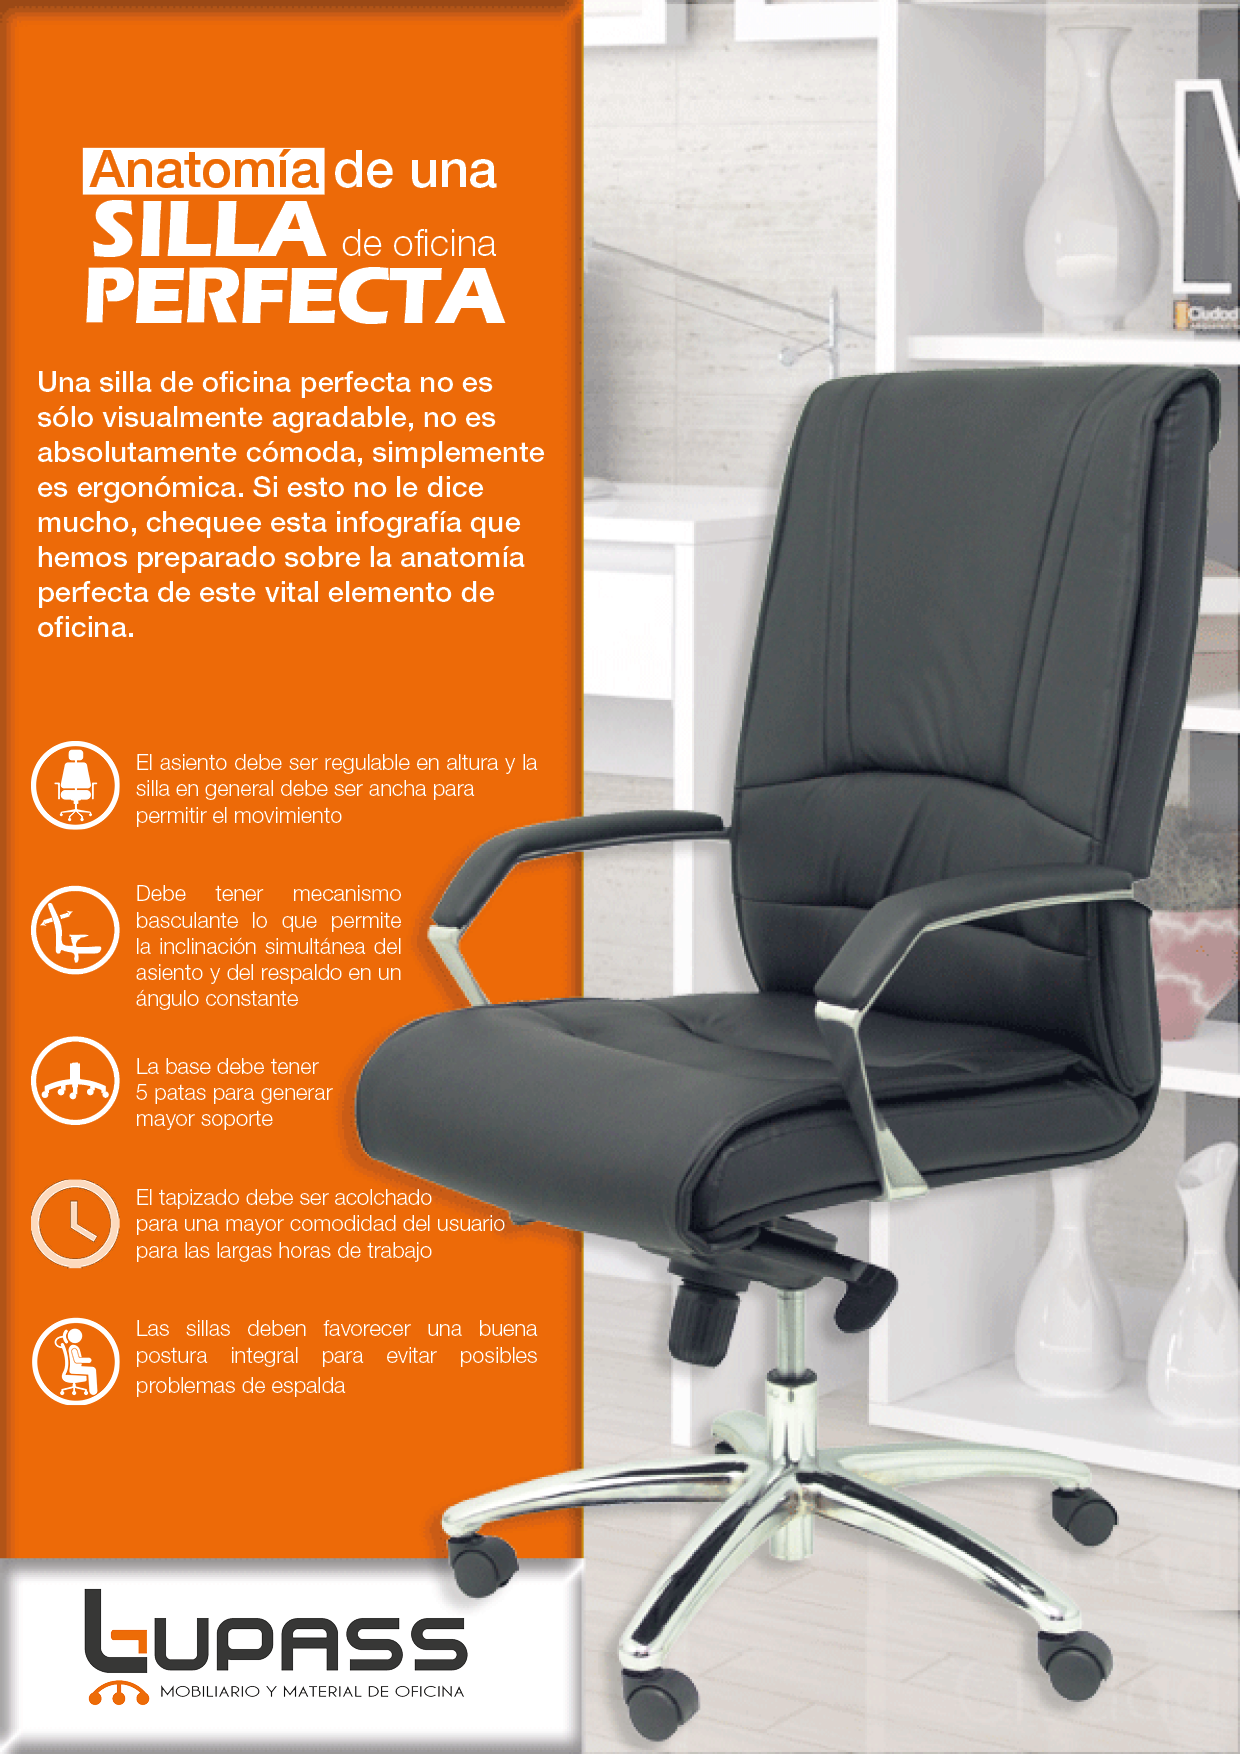 6 pasos para seleccionar una silla ergonomica de oficina El blog de Sillas-Muebles  – Sillas de diseño y ergonómicas